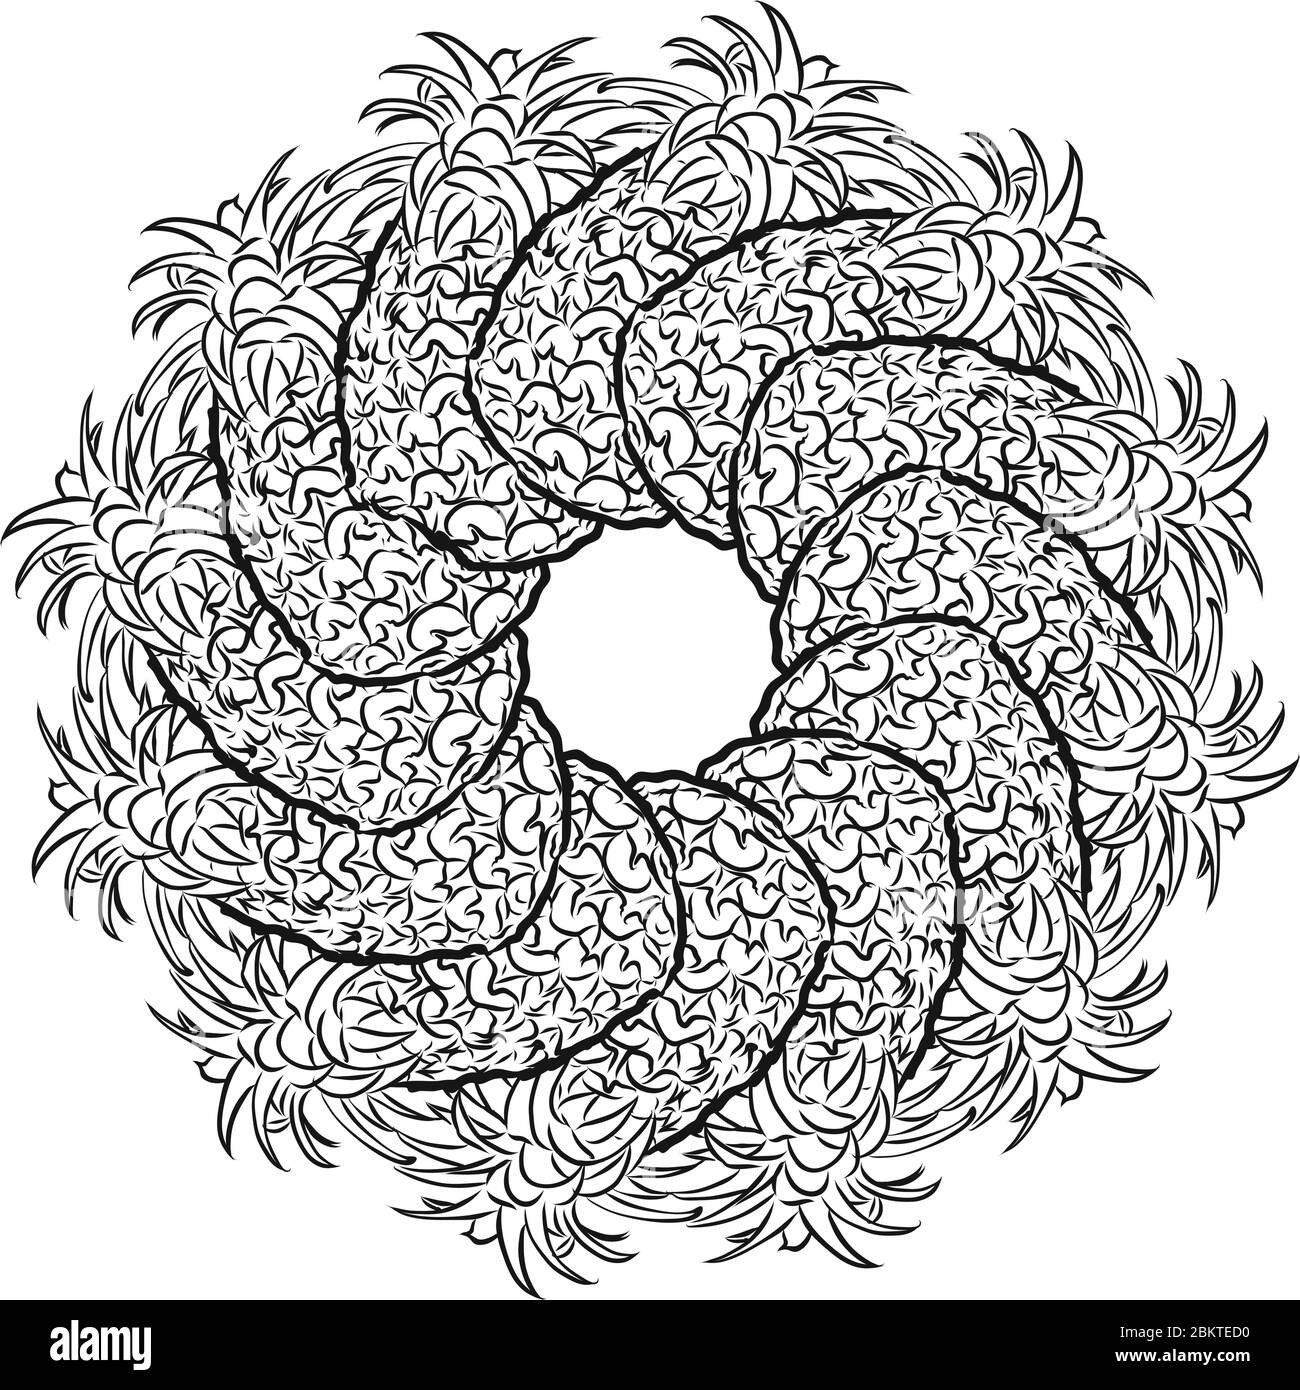 Umriss Version der Ananas in einem Kreis angeordnet. Nahtlose runde Komposition mit handgezogenen Früchten. Vektorgrafik auf Weiß Stock Vektor